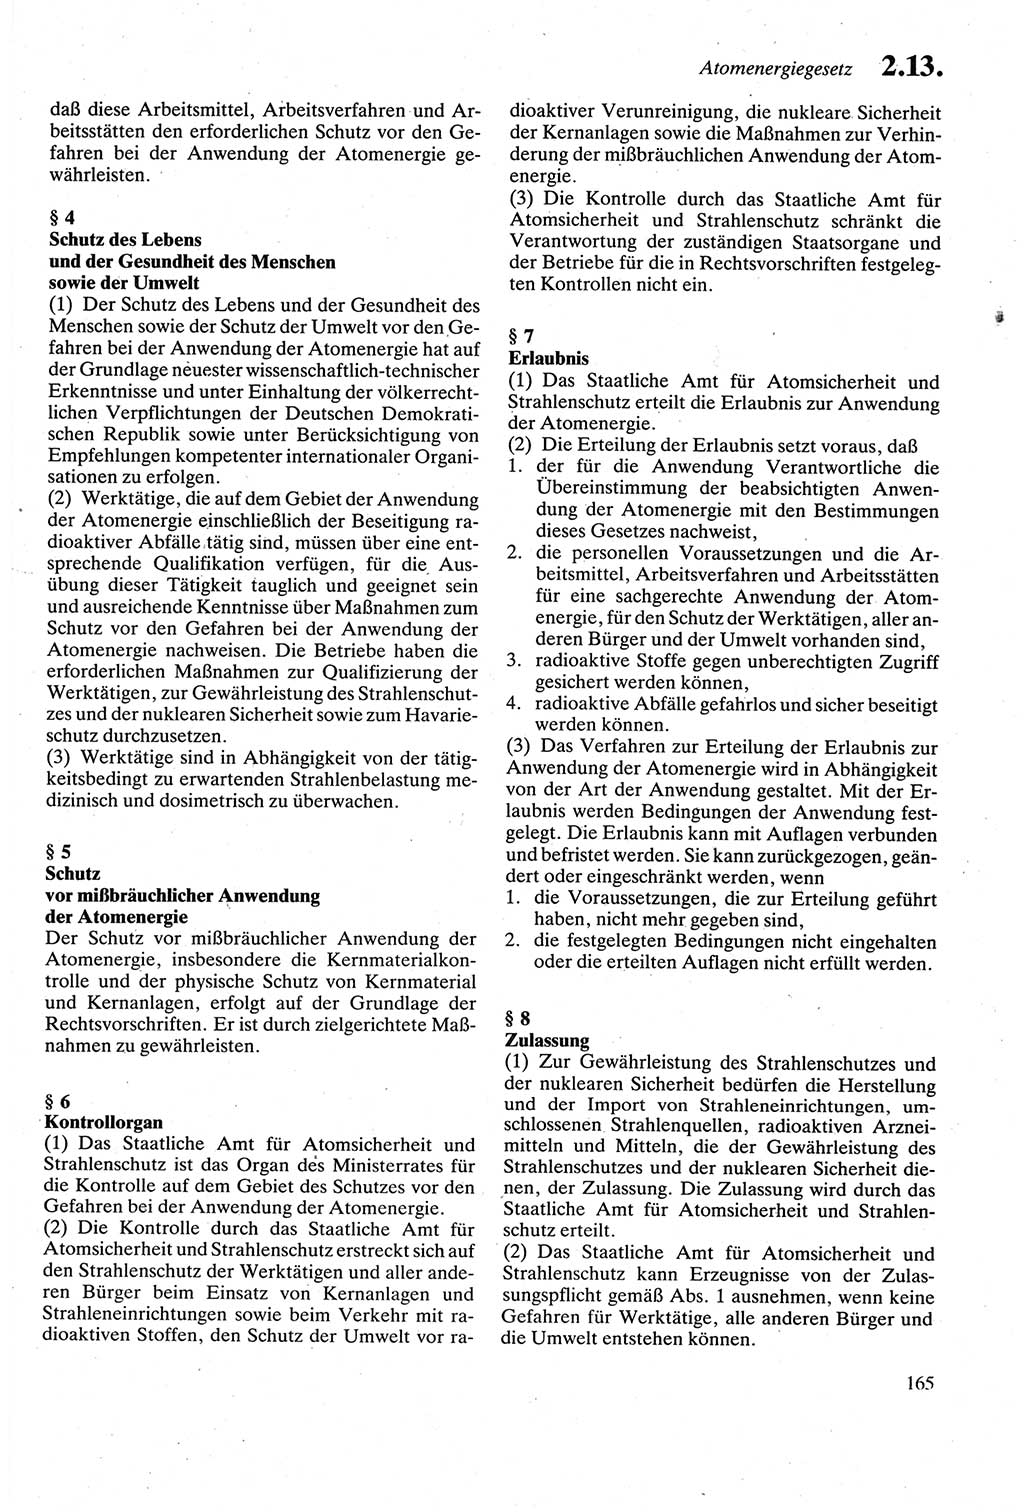 Strafgesetzbuch (StGB) der Deutschen Demokratischen Republik (DDR) sowie angrenzende Gesetze und Bestimmungen 1979, Seite 165 (StGB DDR Ges. Best. 1979, S. 165)